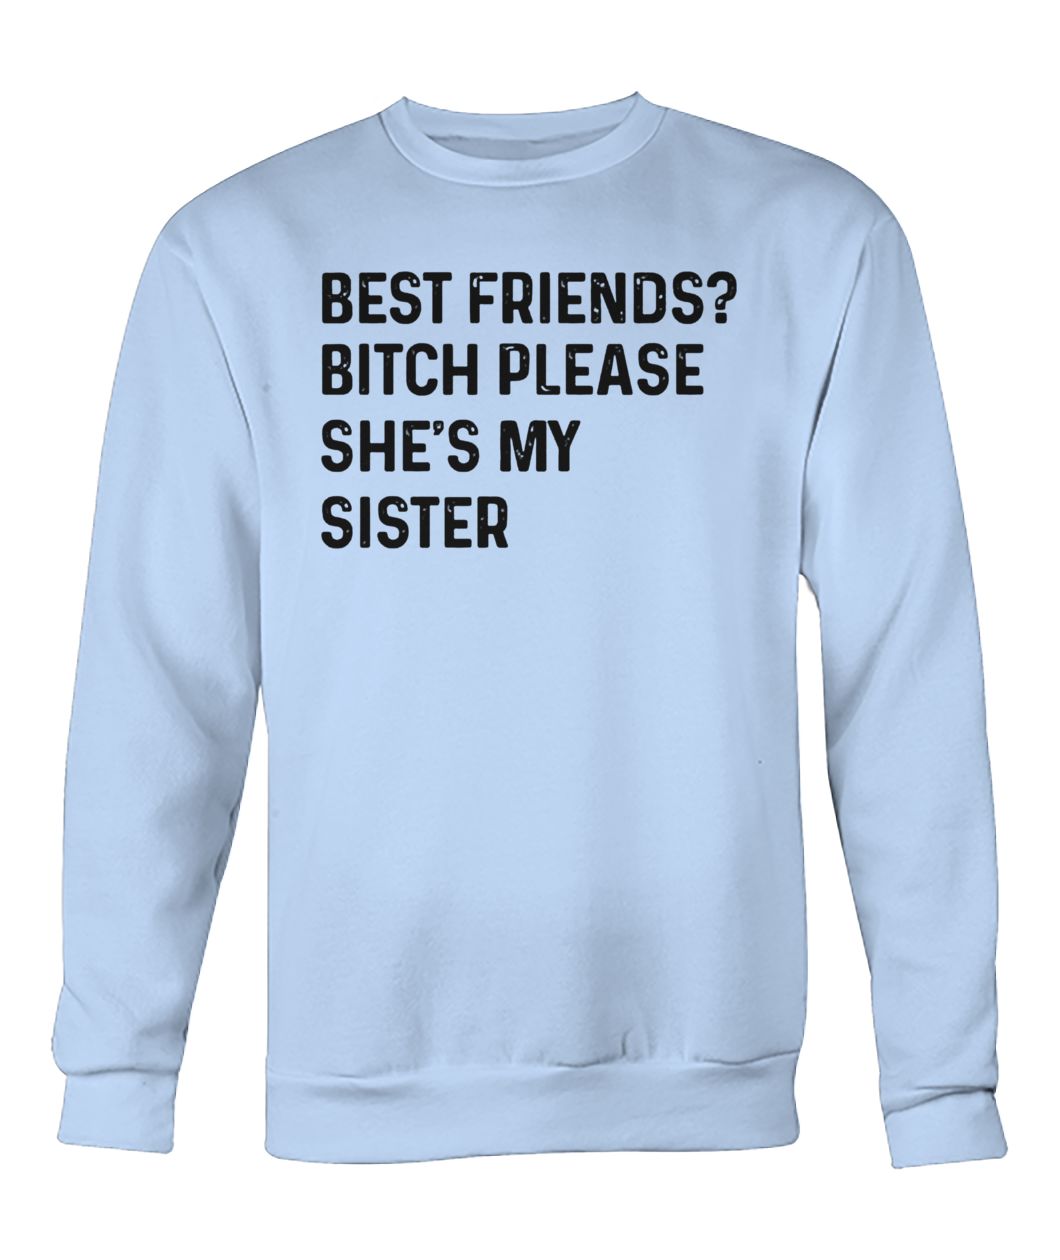 Best friend bitch please she is my sister crew neck sweatshirt